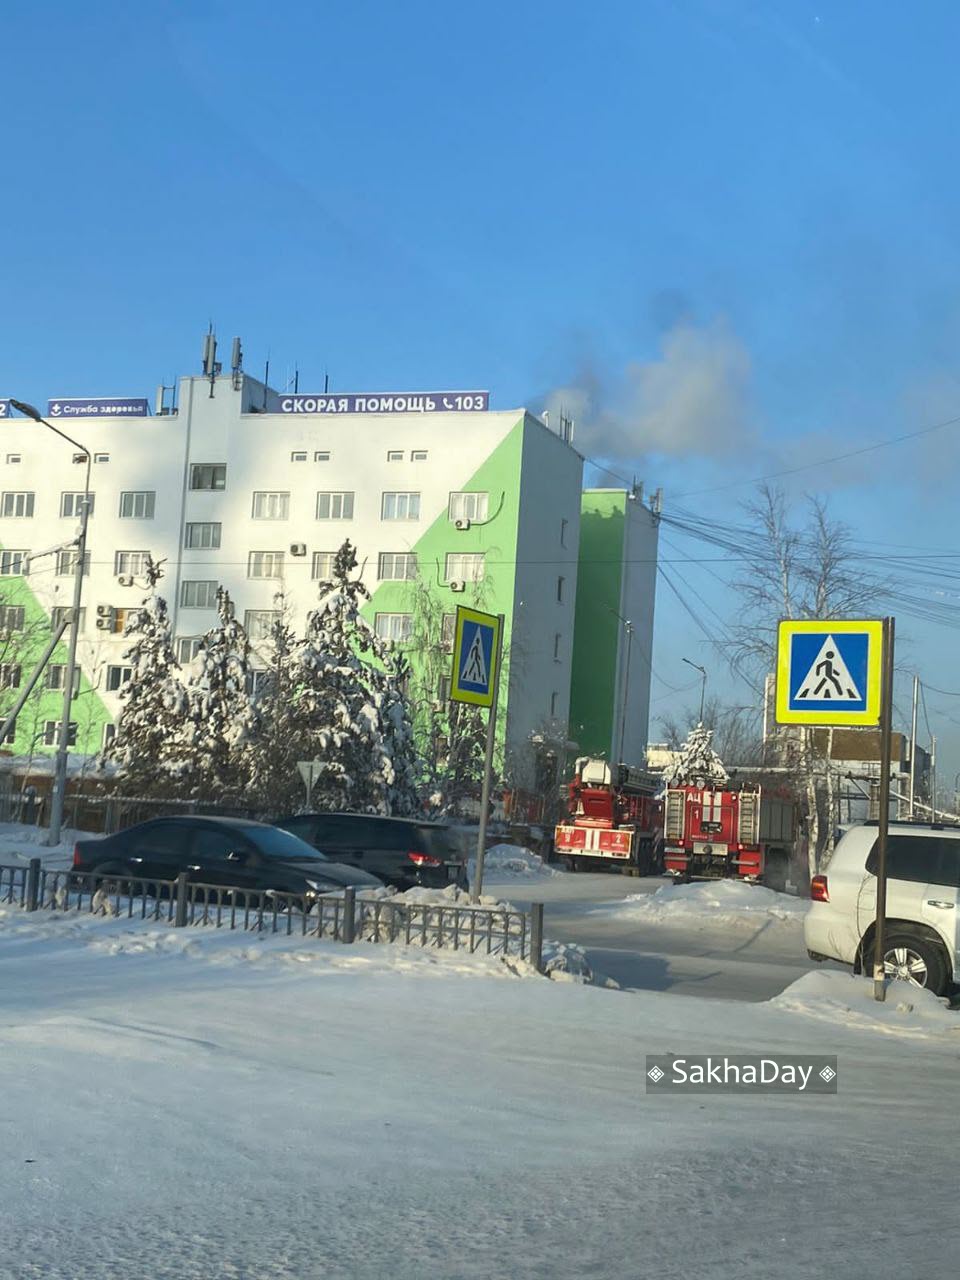 В Якутске произошло возгорание в здании Скорой помощи